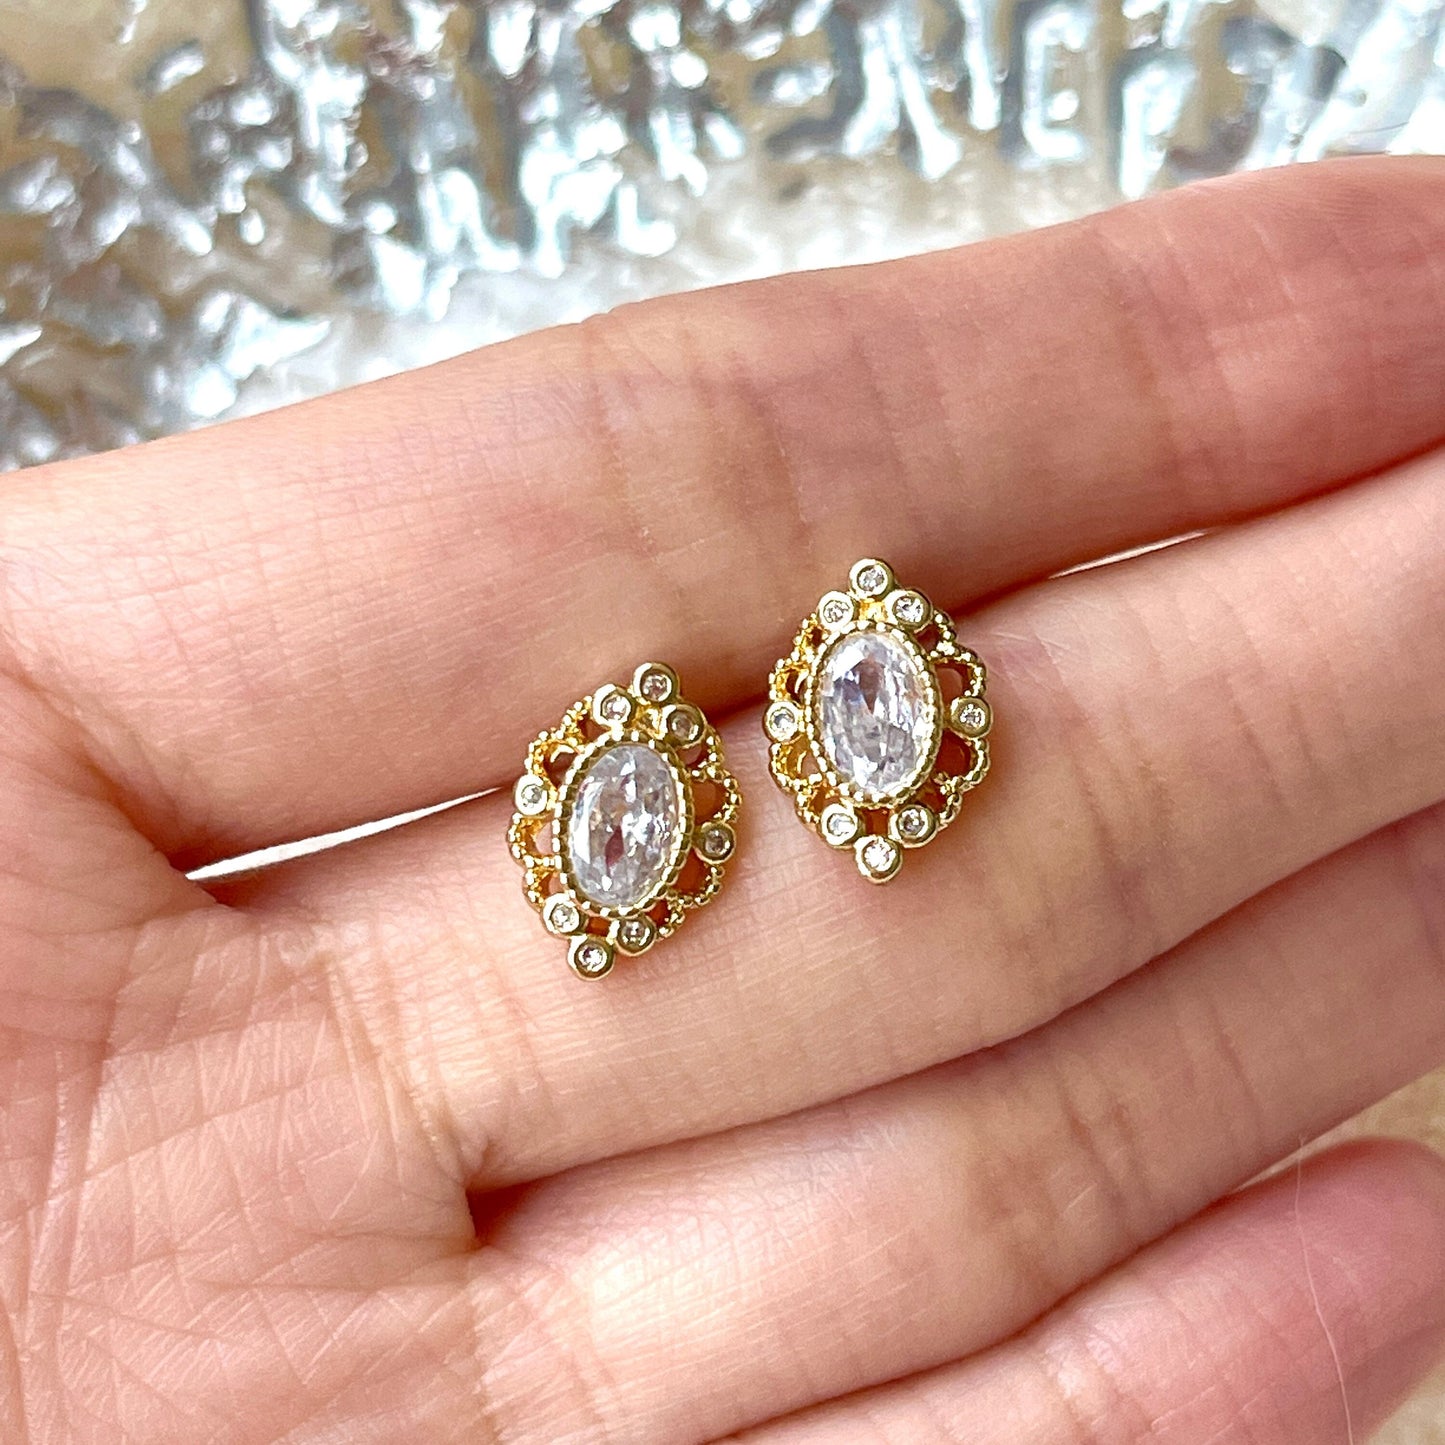 Oval Diamond Stud Earrings, Gold Lace CZ Earrings, Vintage Dainty Earrings, Crown Earrings, Luxury Minimalist Earrings, April Birthstone